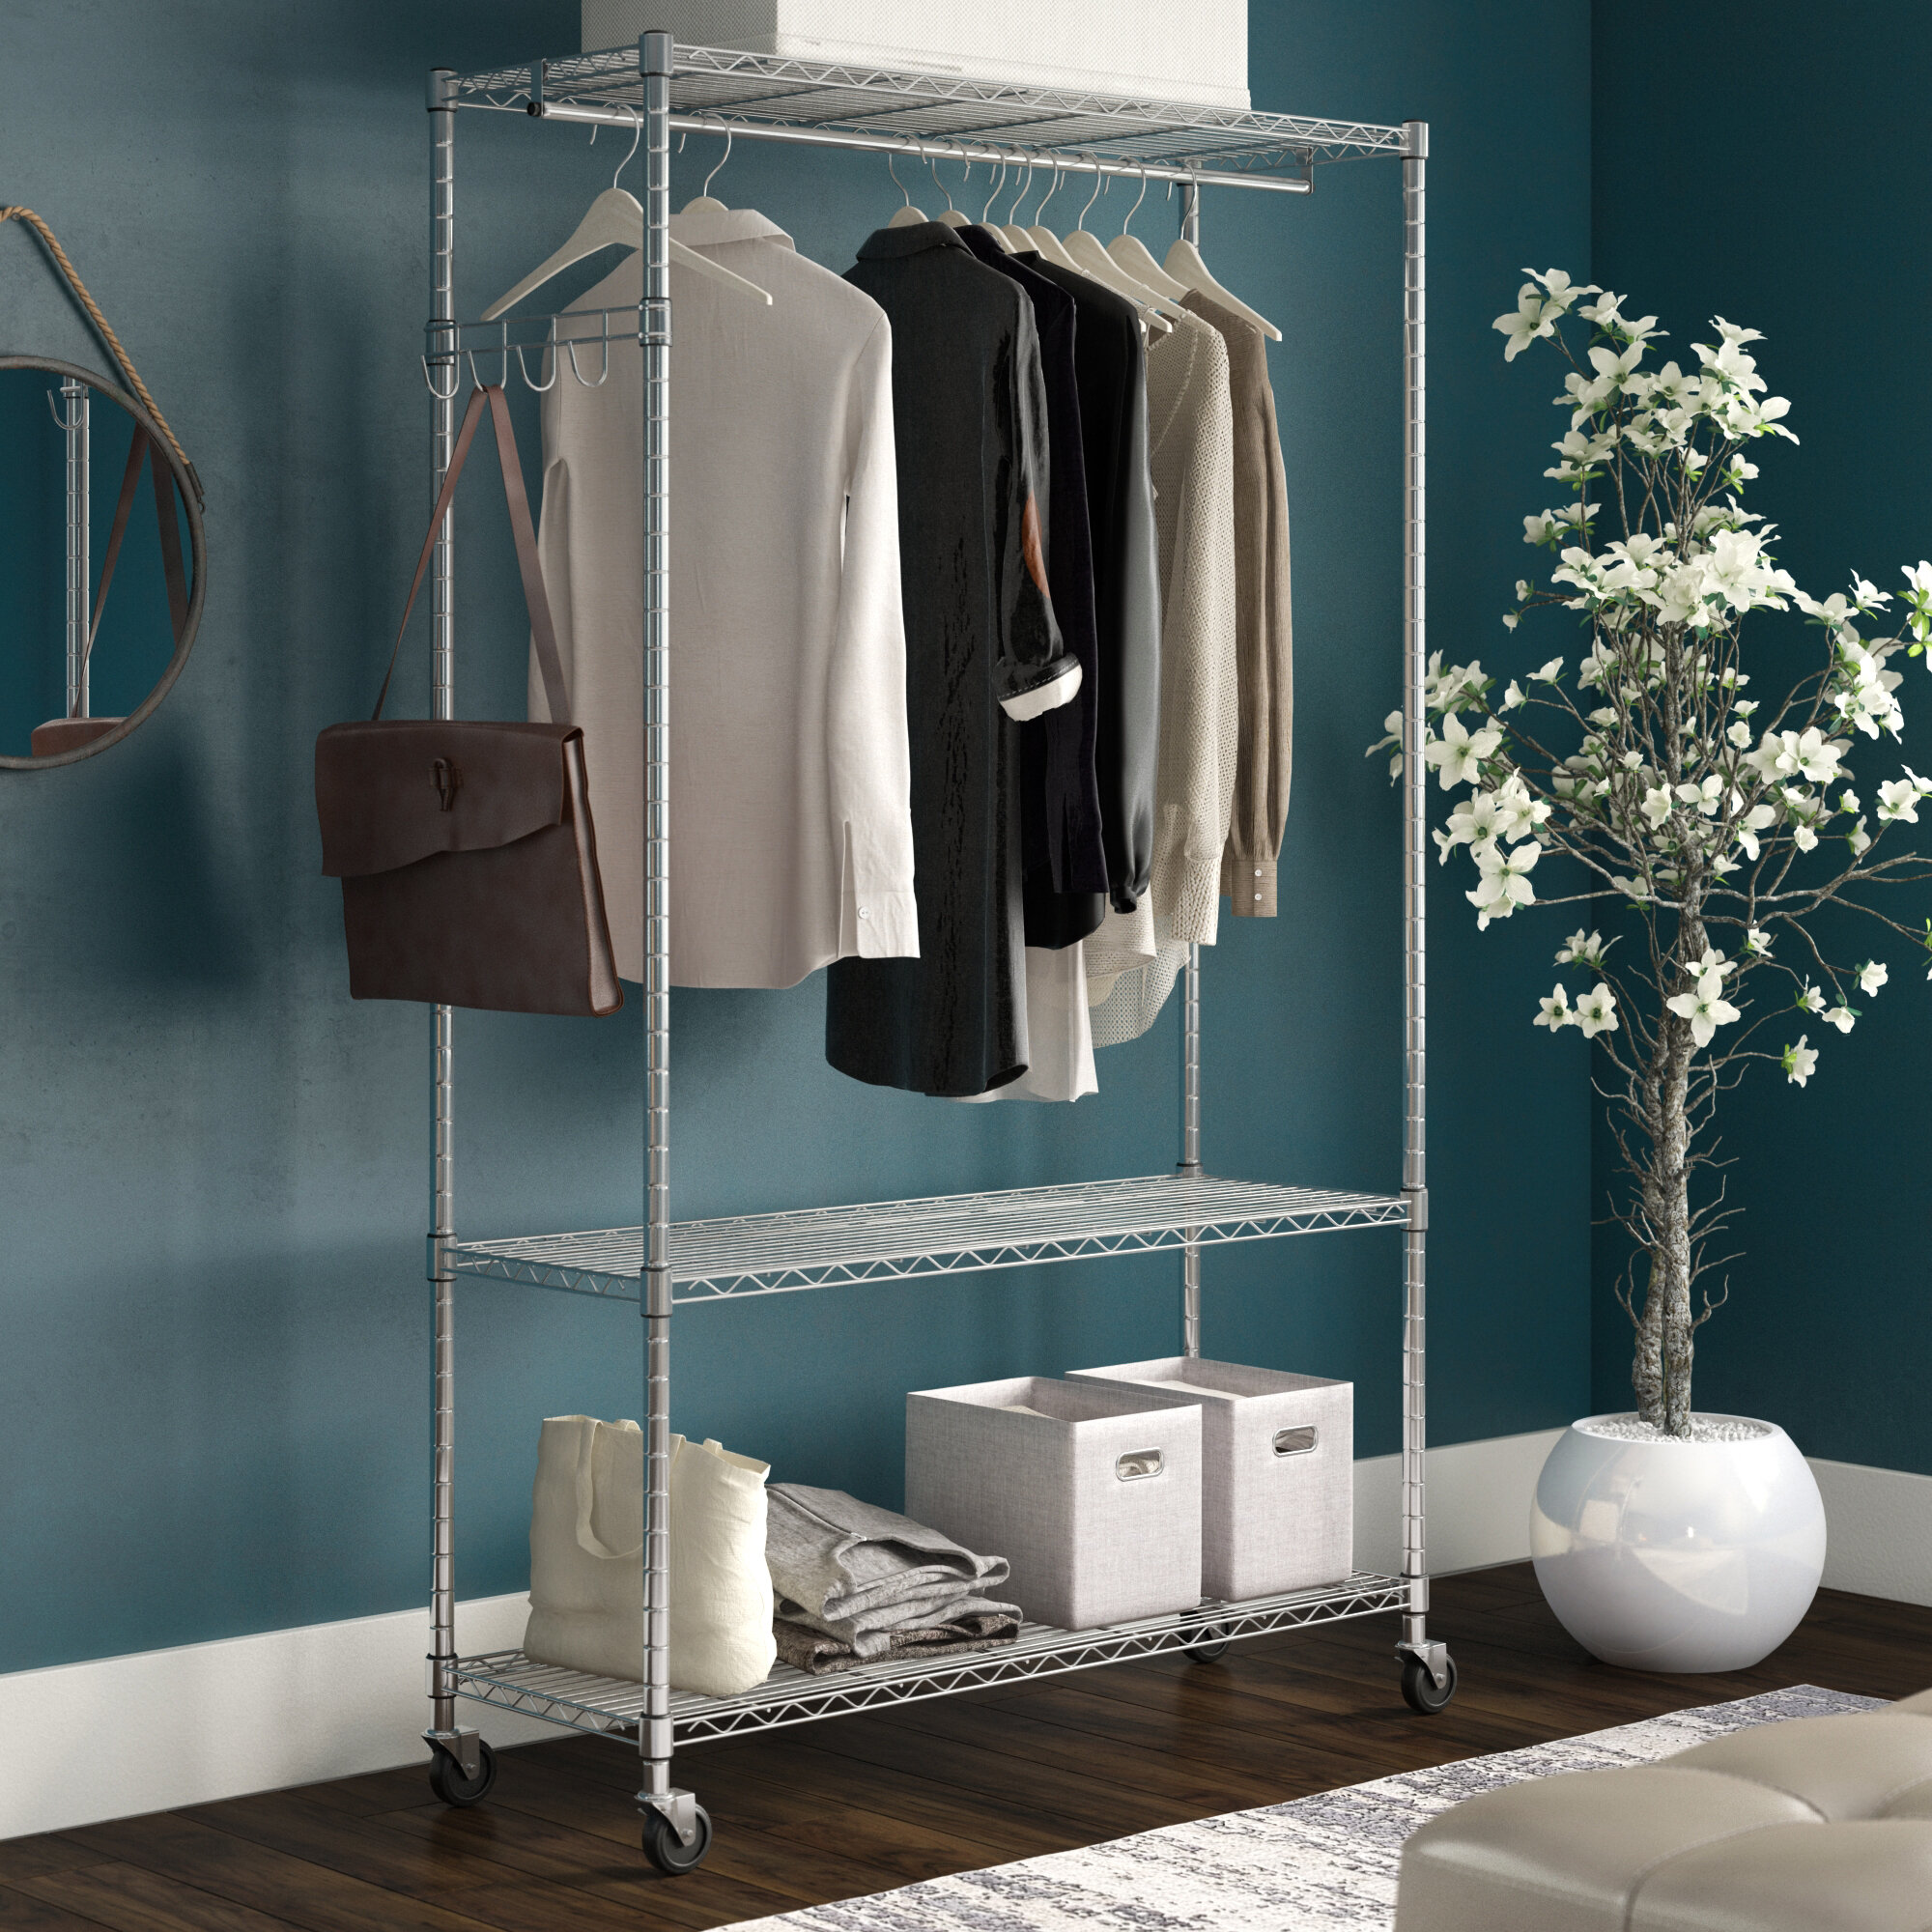 Industrial 40” Pipe Hangers Cloth Towel Storage Hooks Bathroom Bedroom Storage 